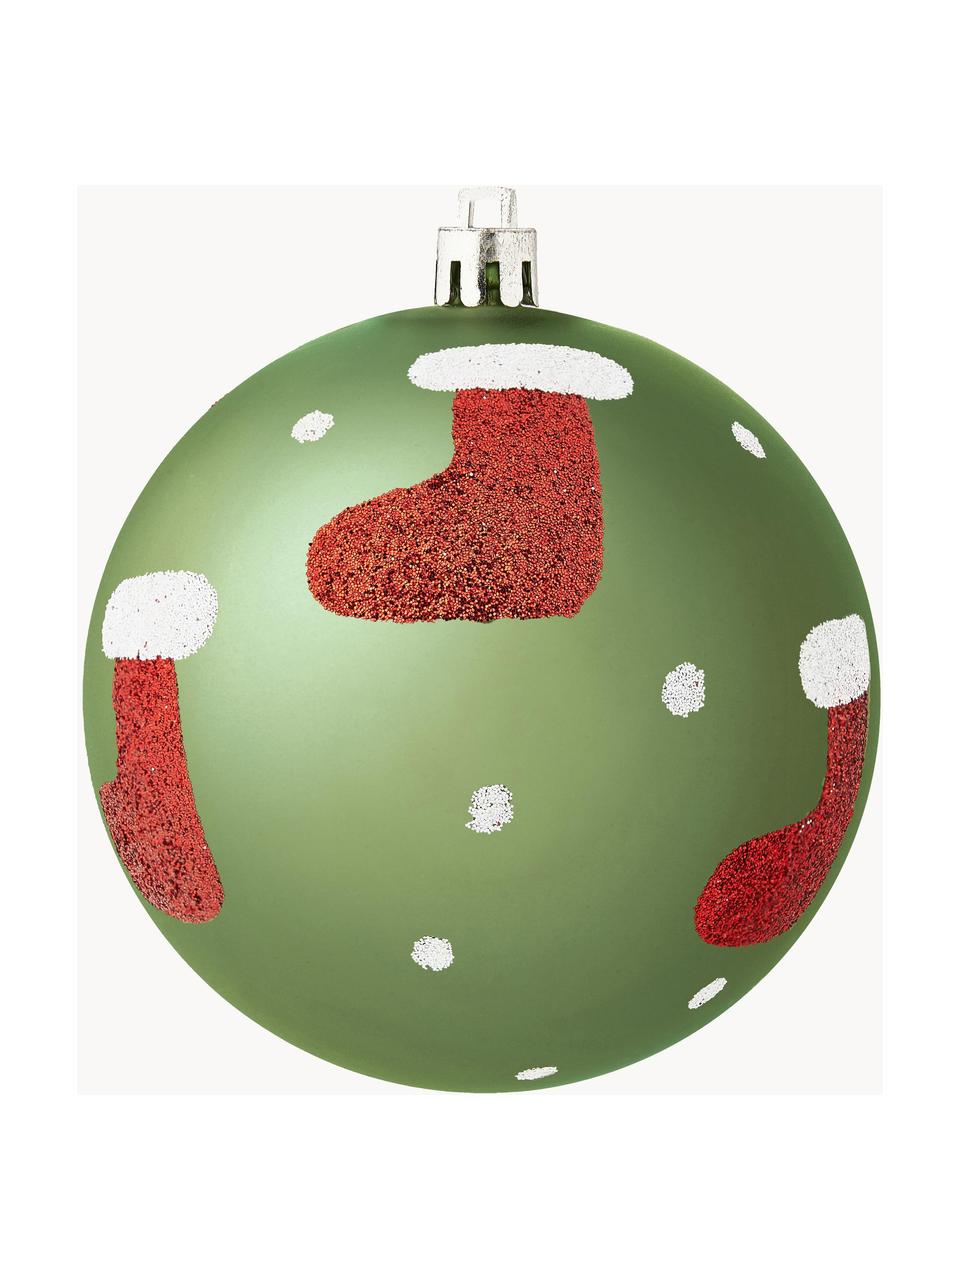 Sada nerozbitných vánočních ozdob Socky, Ø 8 cm, 12 dílů, Umělá hmota, Zelená, bílá, červená, stříbrná, Ø 8 cm